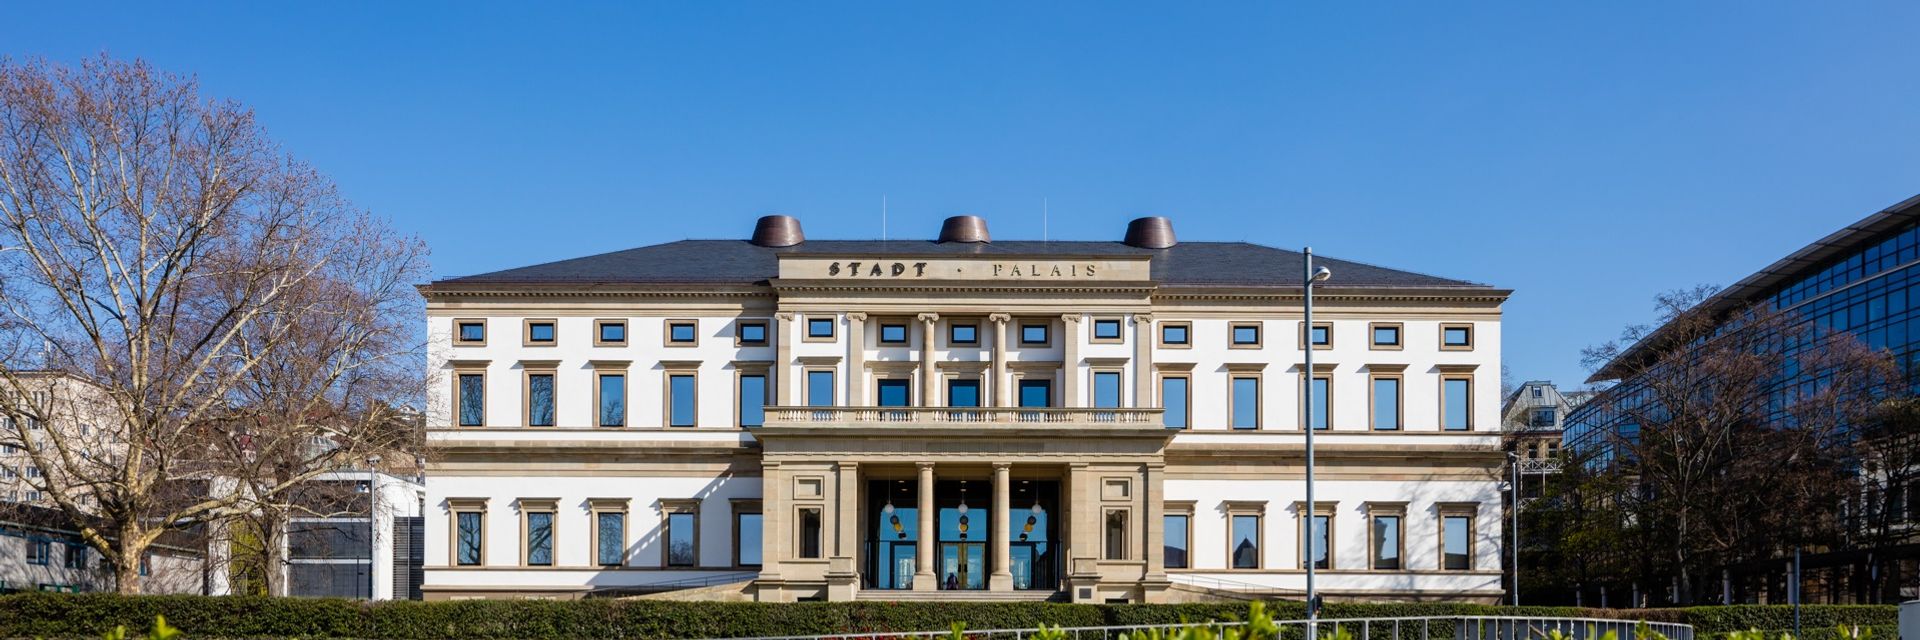 StadtPalais - Musée de Stuttgart